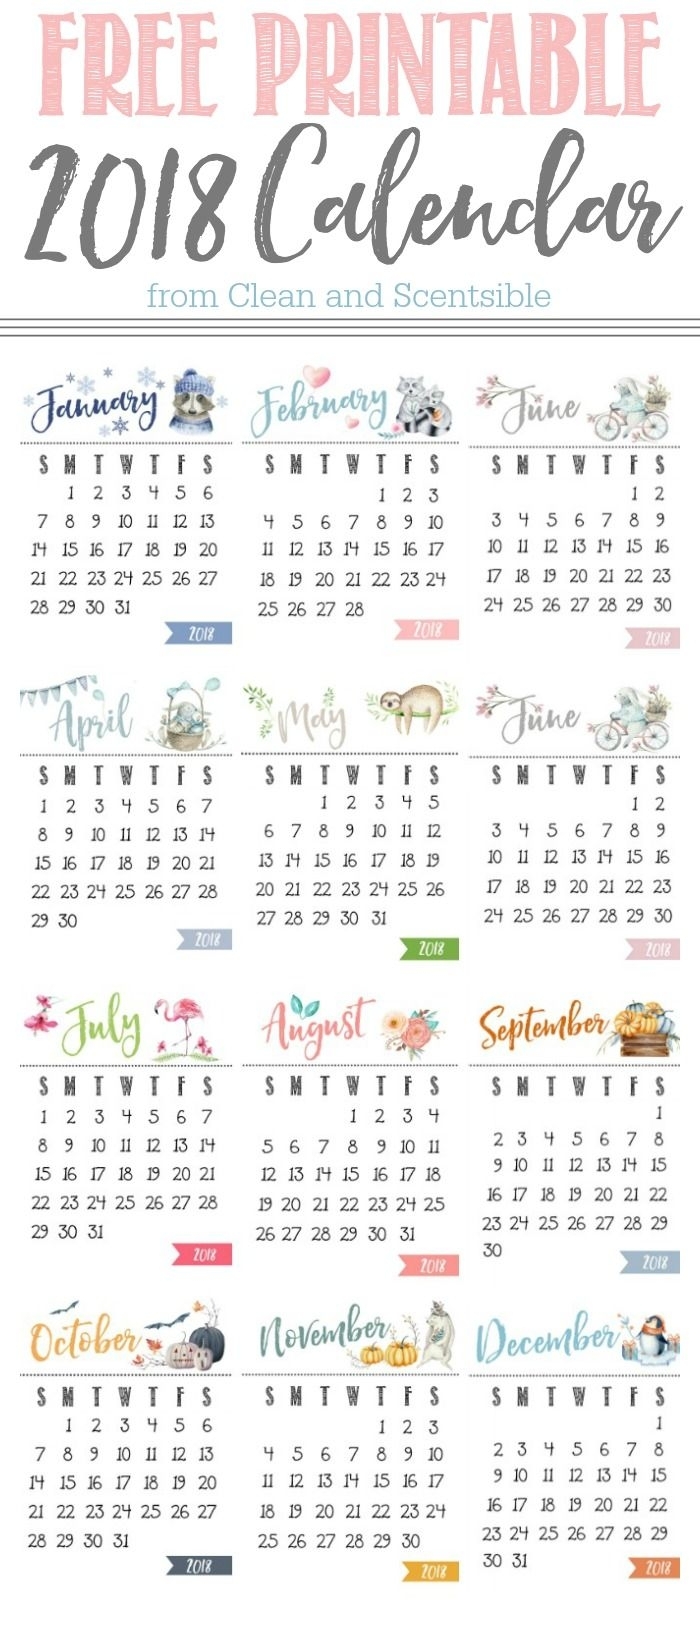 Free Printable Calendar | Free Printable Calendar, Printable